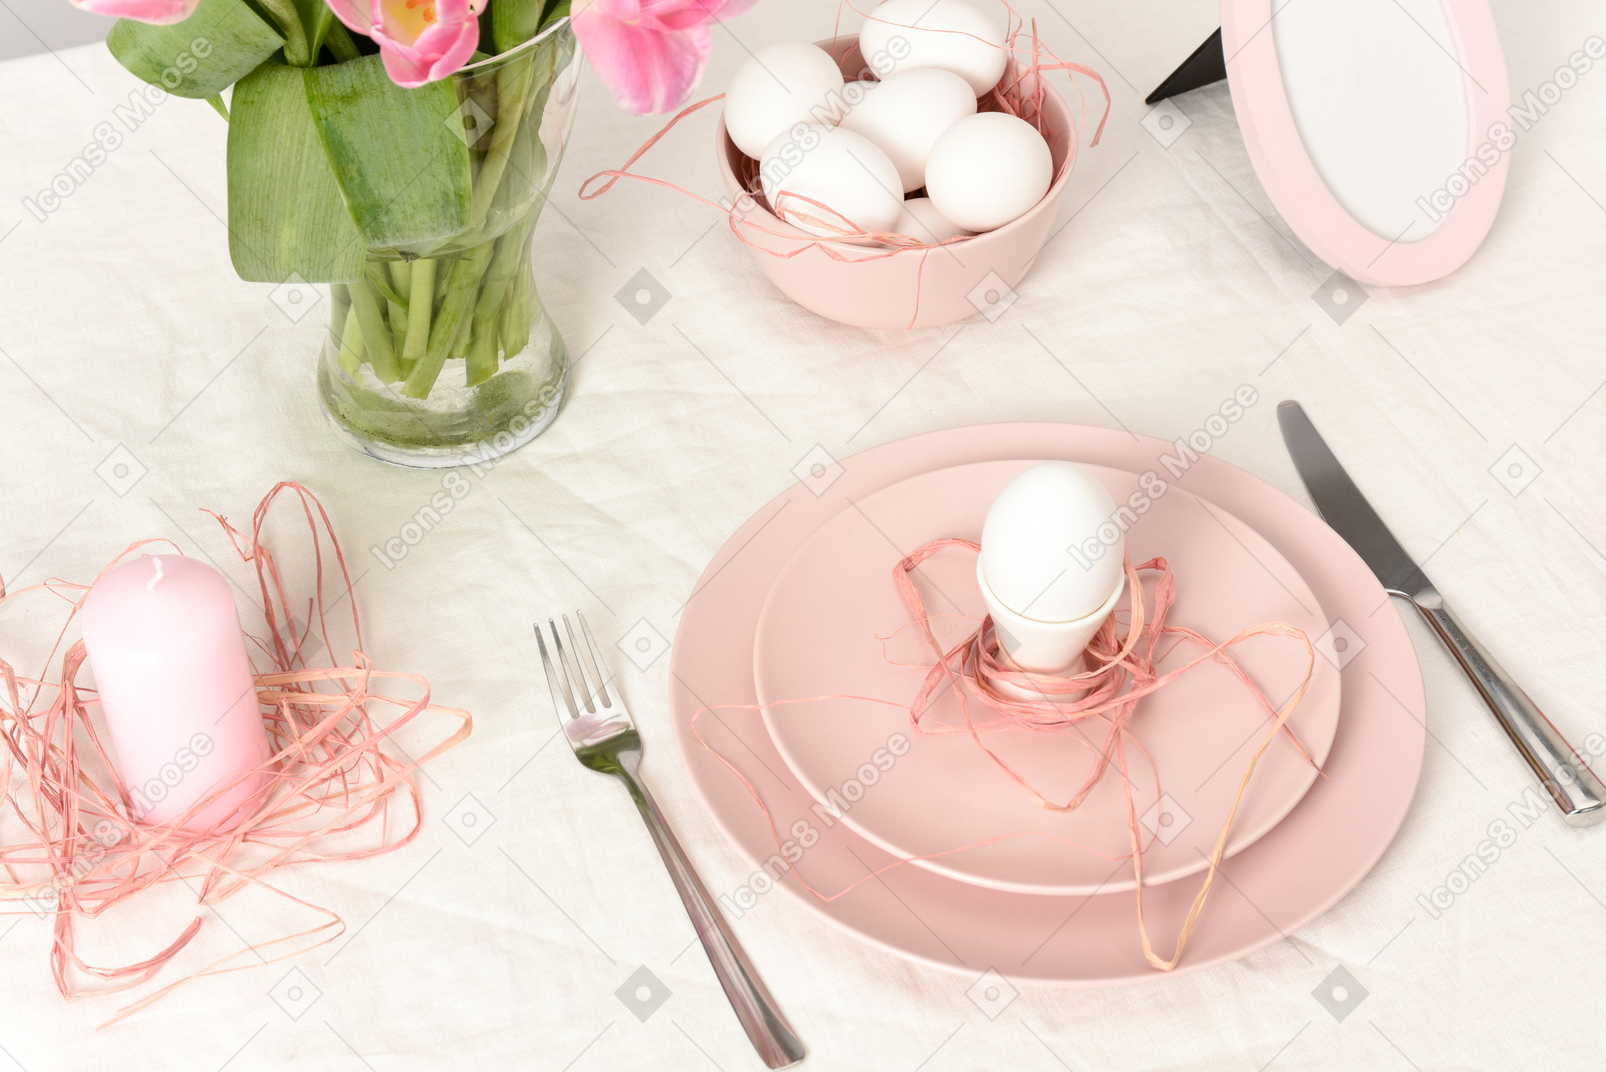 Configuração de tabela de páscoa com ovos e decorações